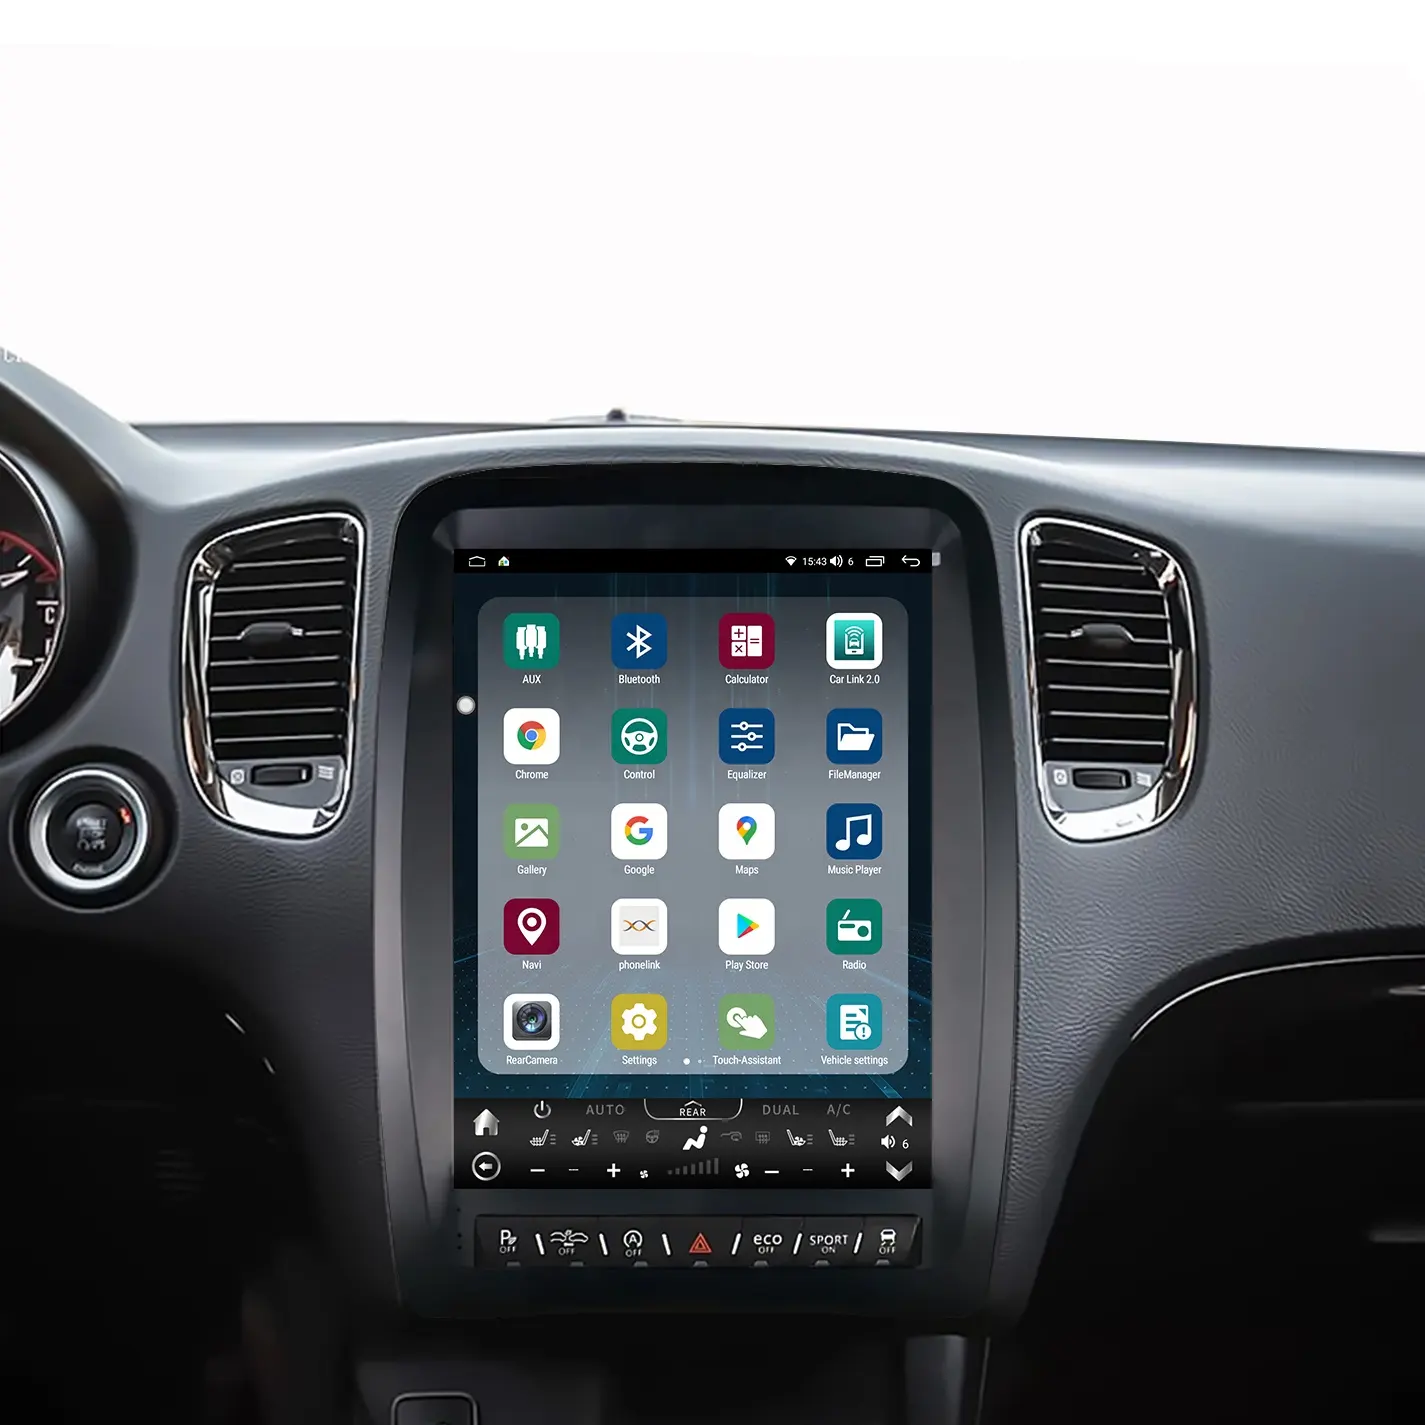 13 "Android Vertical pantalla táctil coche estéreo Gps navegación REPRODUCTOR DE DVD para Dodge Durango 2011 - 2020 Tesla radio